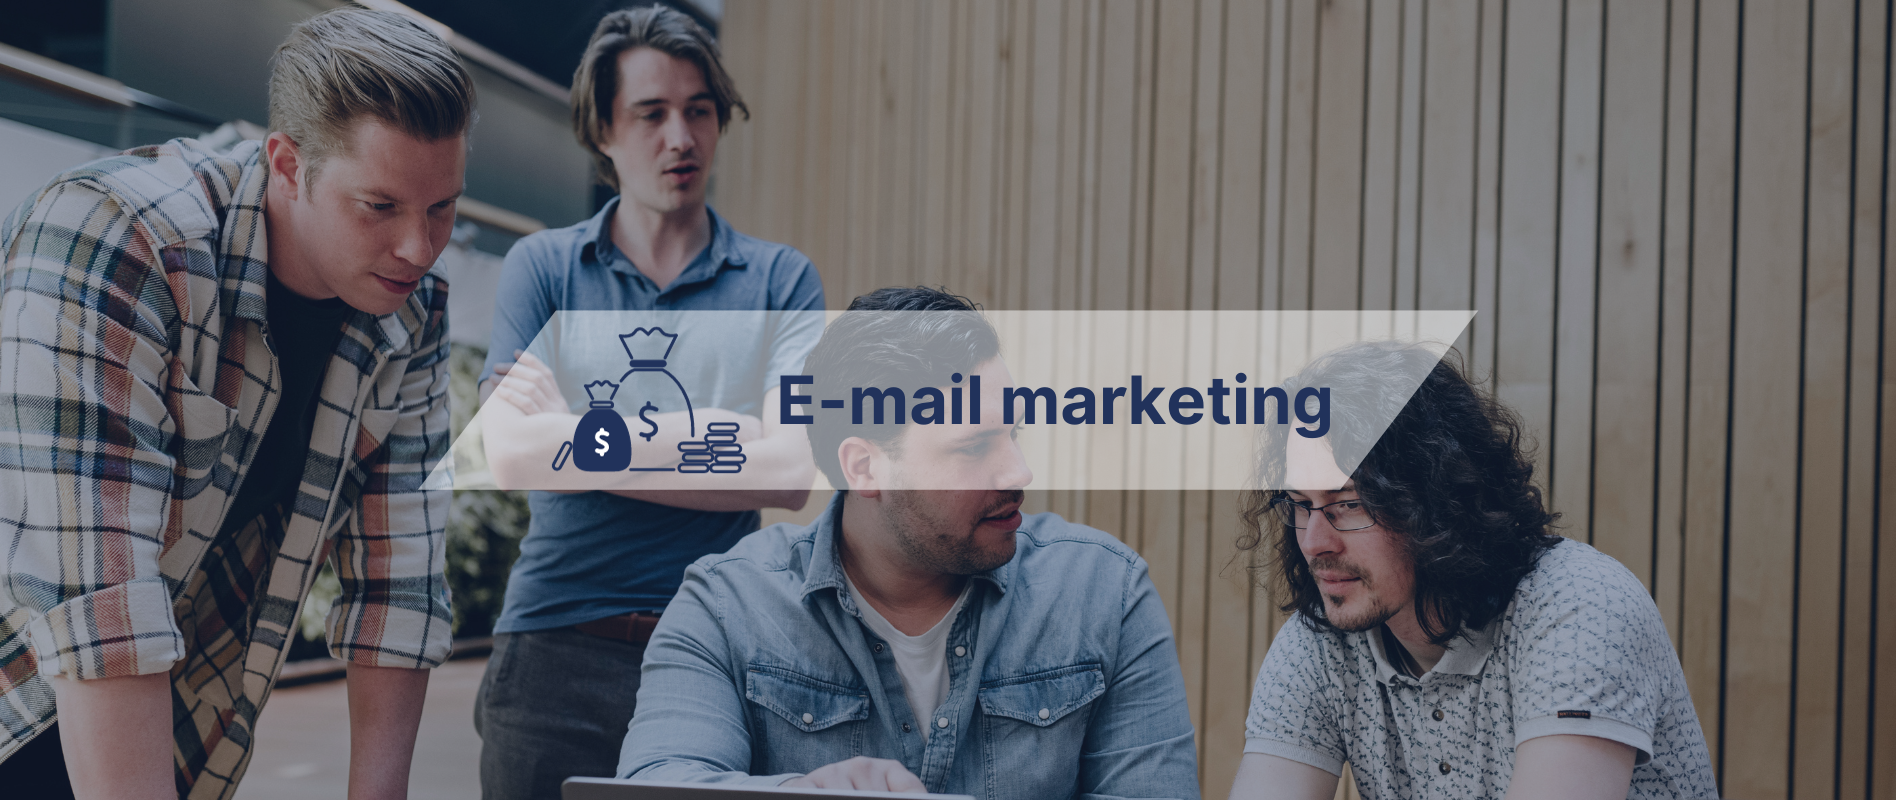 9 redenen waarom je nu wilt beginnen met e-mail marketing